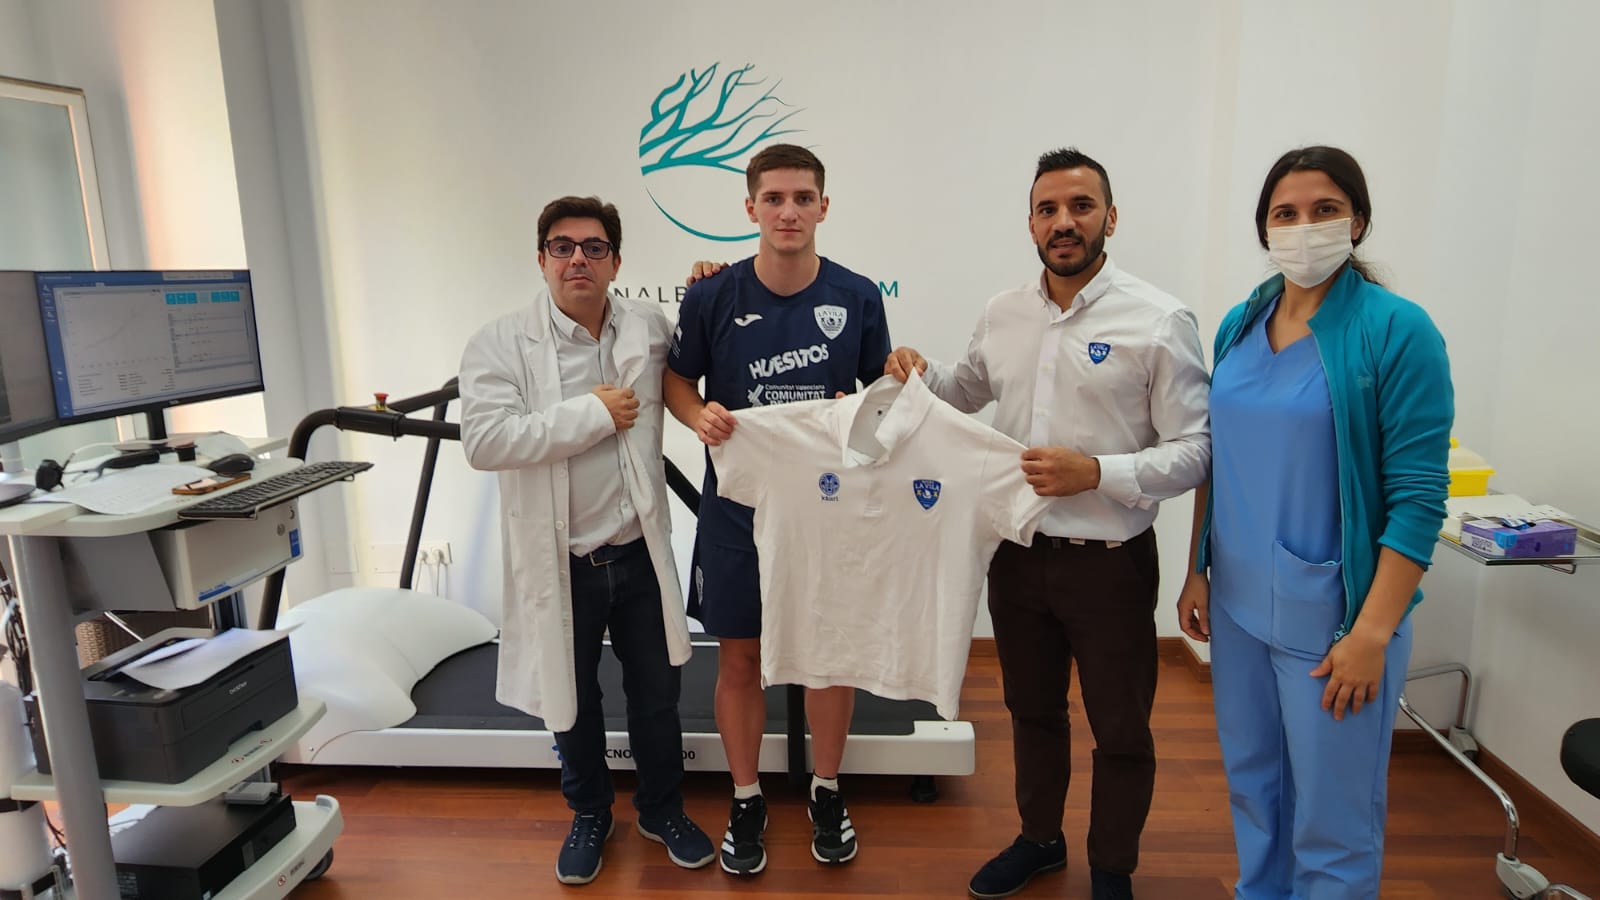 Acuerdo de colaboración con Klinik PM. - La Vila Rugby